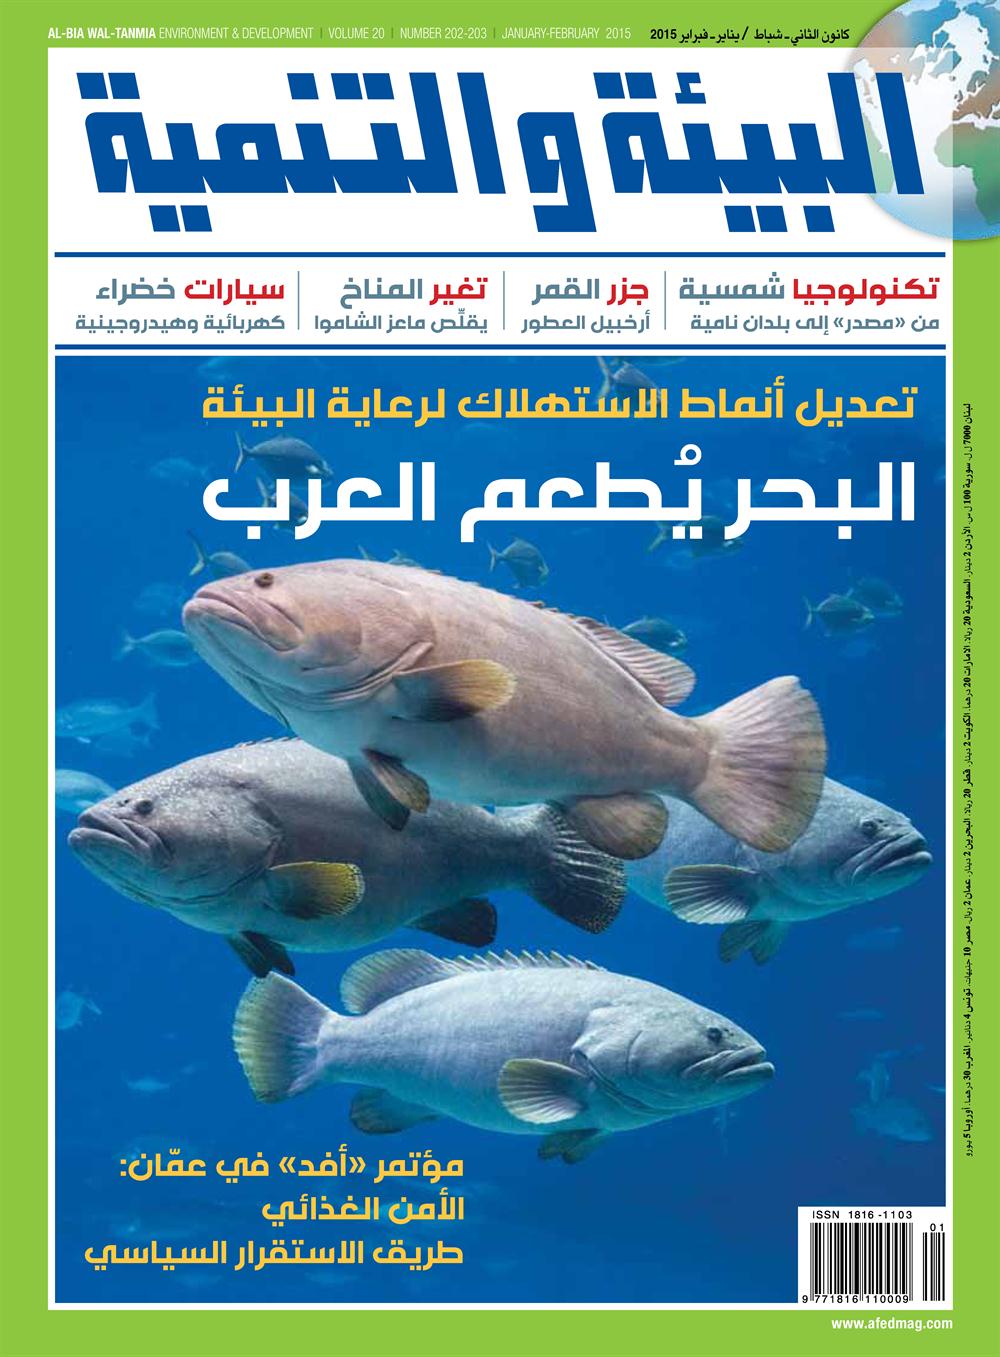 عدد يناير - فبراير من مجلة البيئة والتنمية 